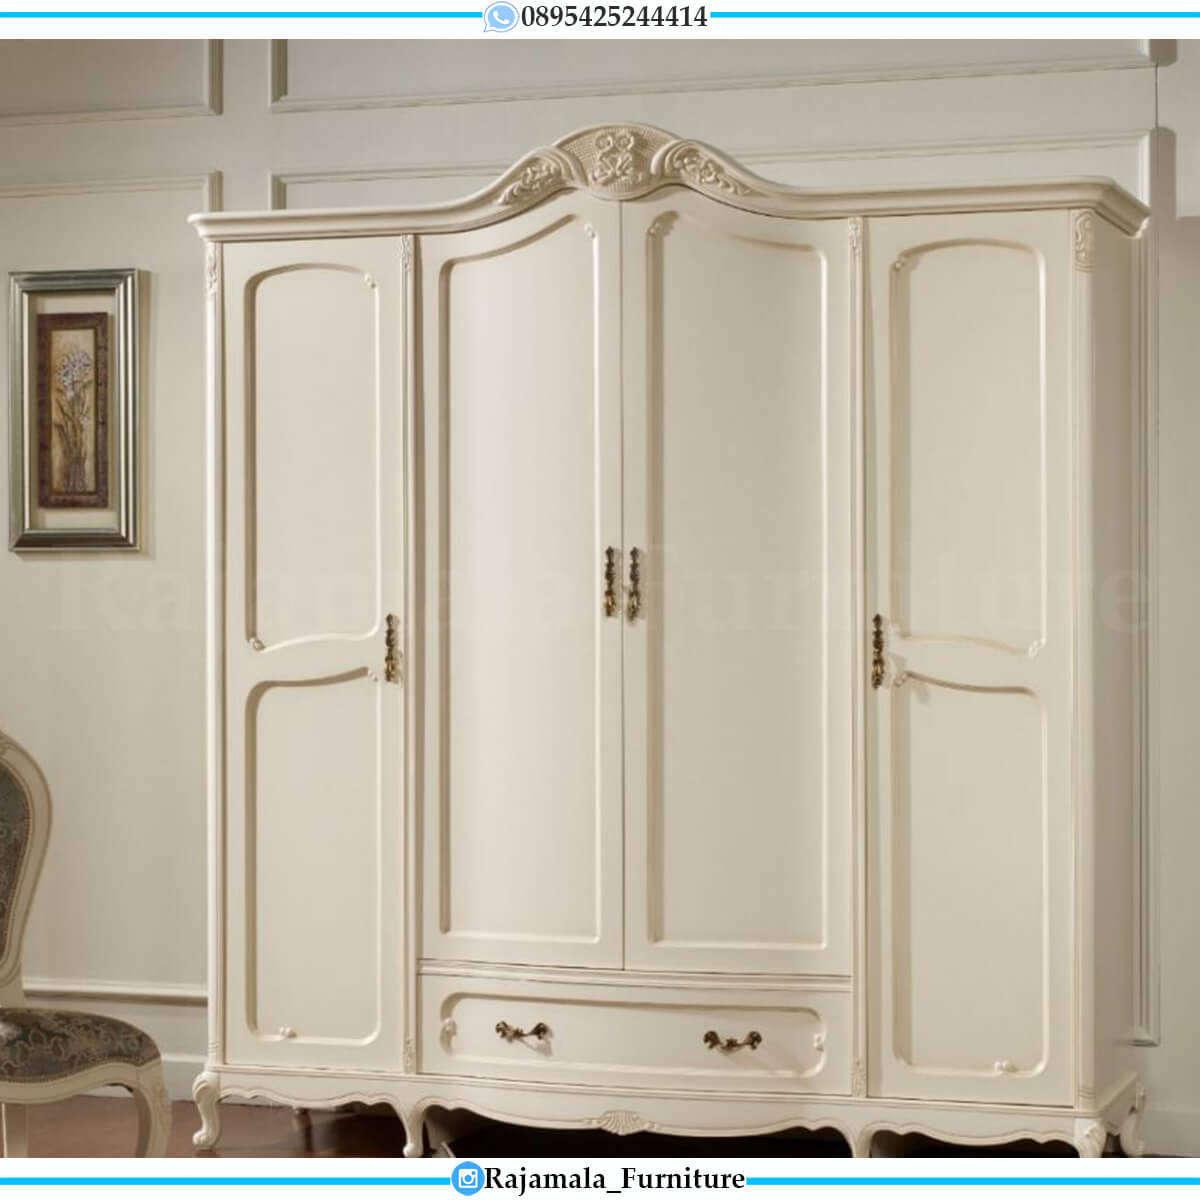 jual lemari baju mewah putih duco luxury classic design furniture